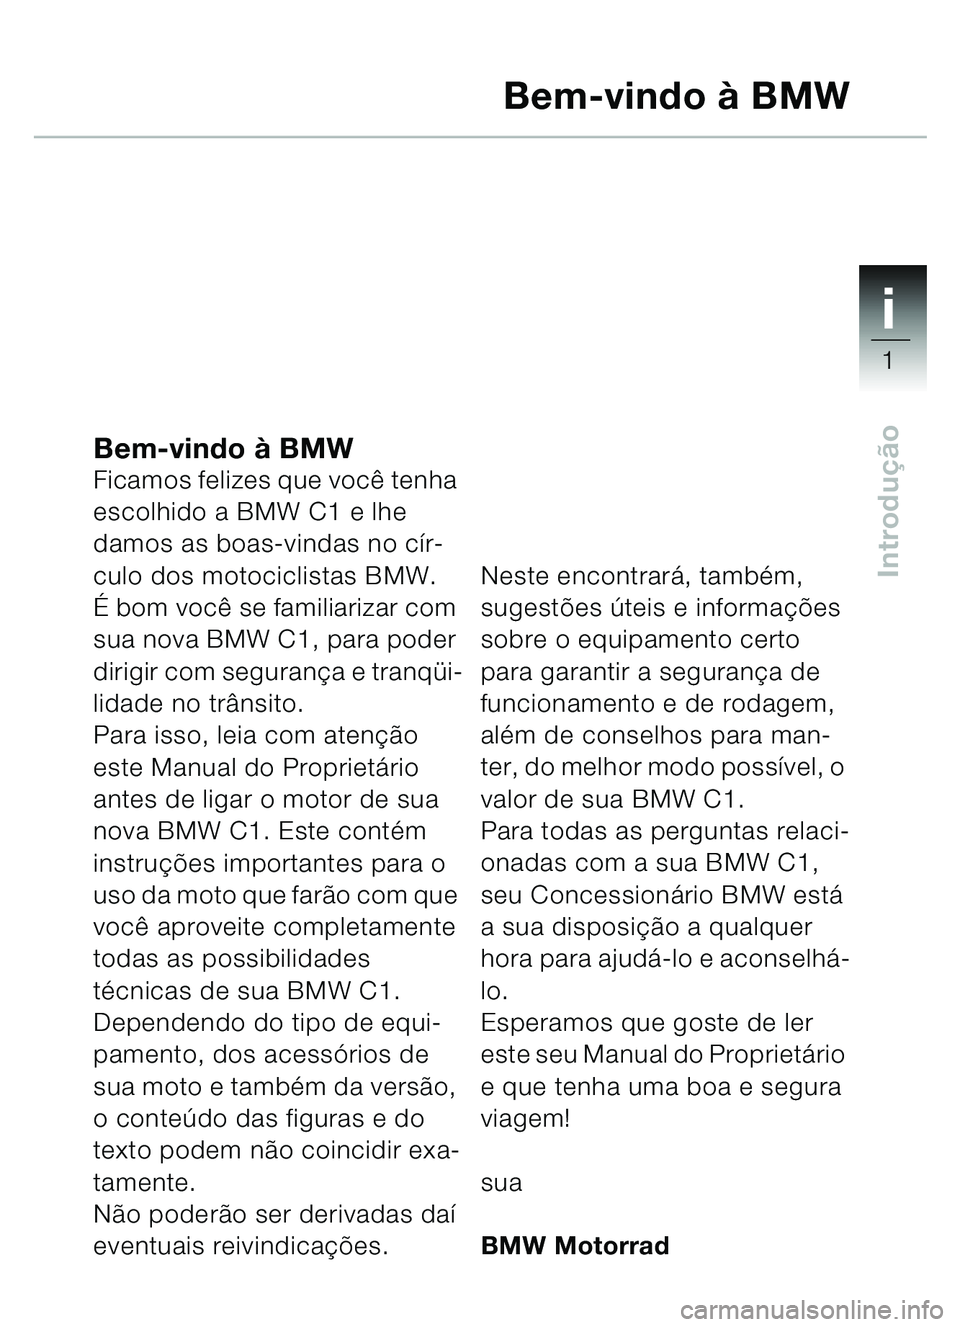 BMW MOTORRAD C1 2000  Manual do condutor (in Portuguese) 1i
1
Introdução
Bem-vindo à BMWFicamos felizes que você tenha 
escolhido a BMW C1 e lhe 
damos as boas-vindas no cír-
culo dos motociclistas BMW.
É bom você se familiarizar com 
sua nova BMW C1